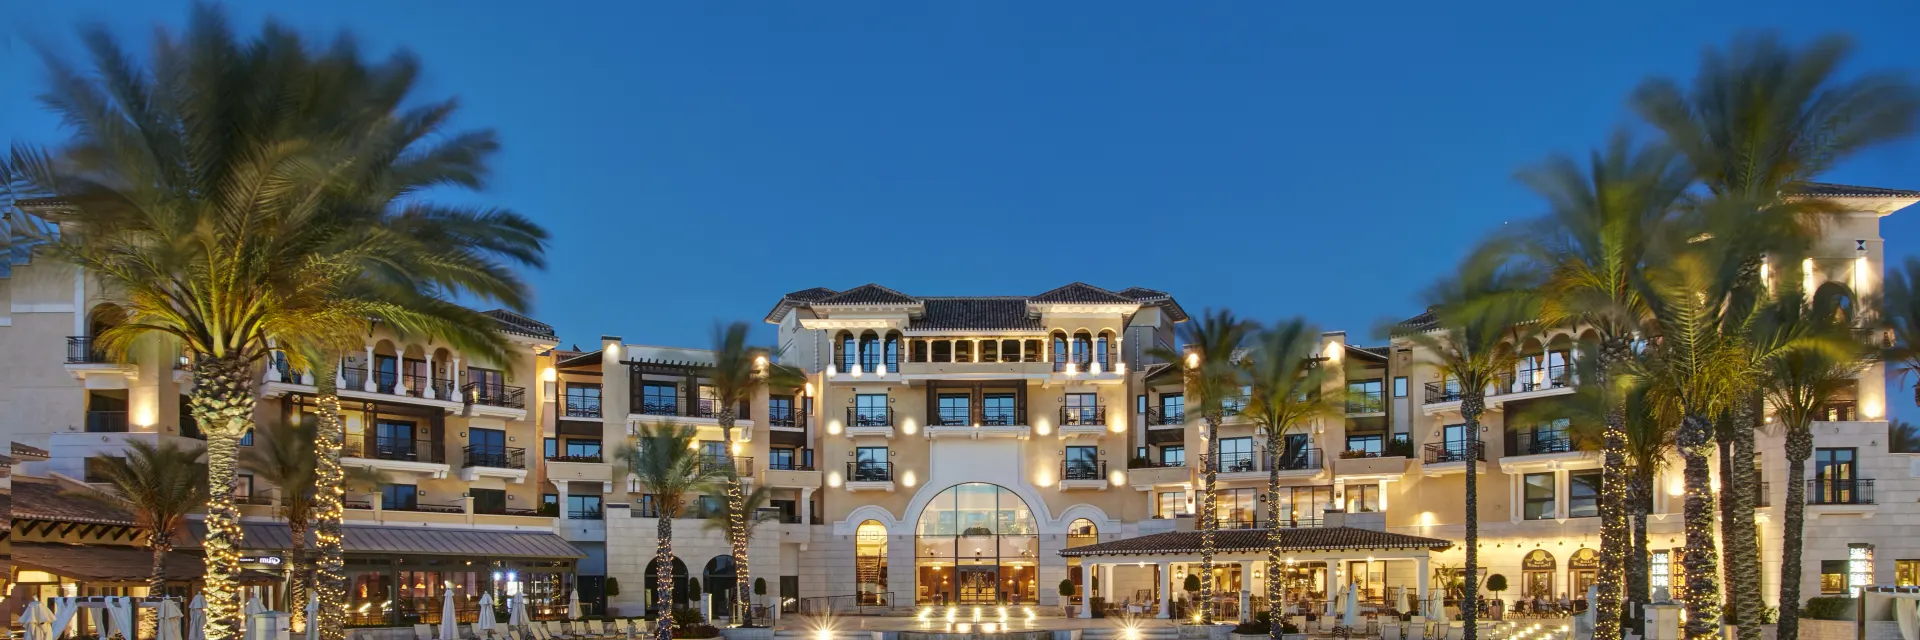 Hotel Inter Continental Mar Menor Golf Resort & Spa